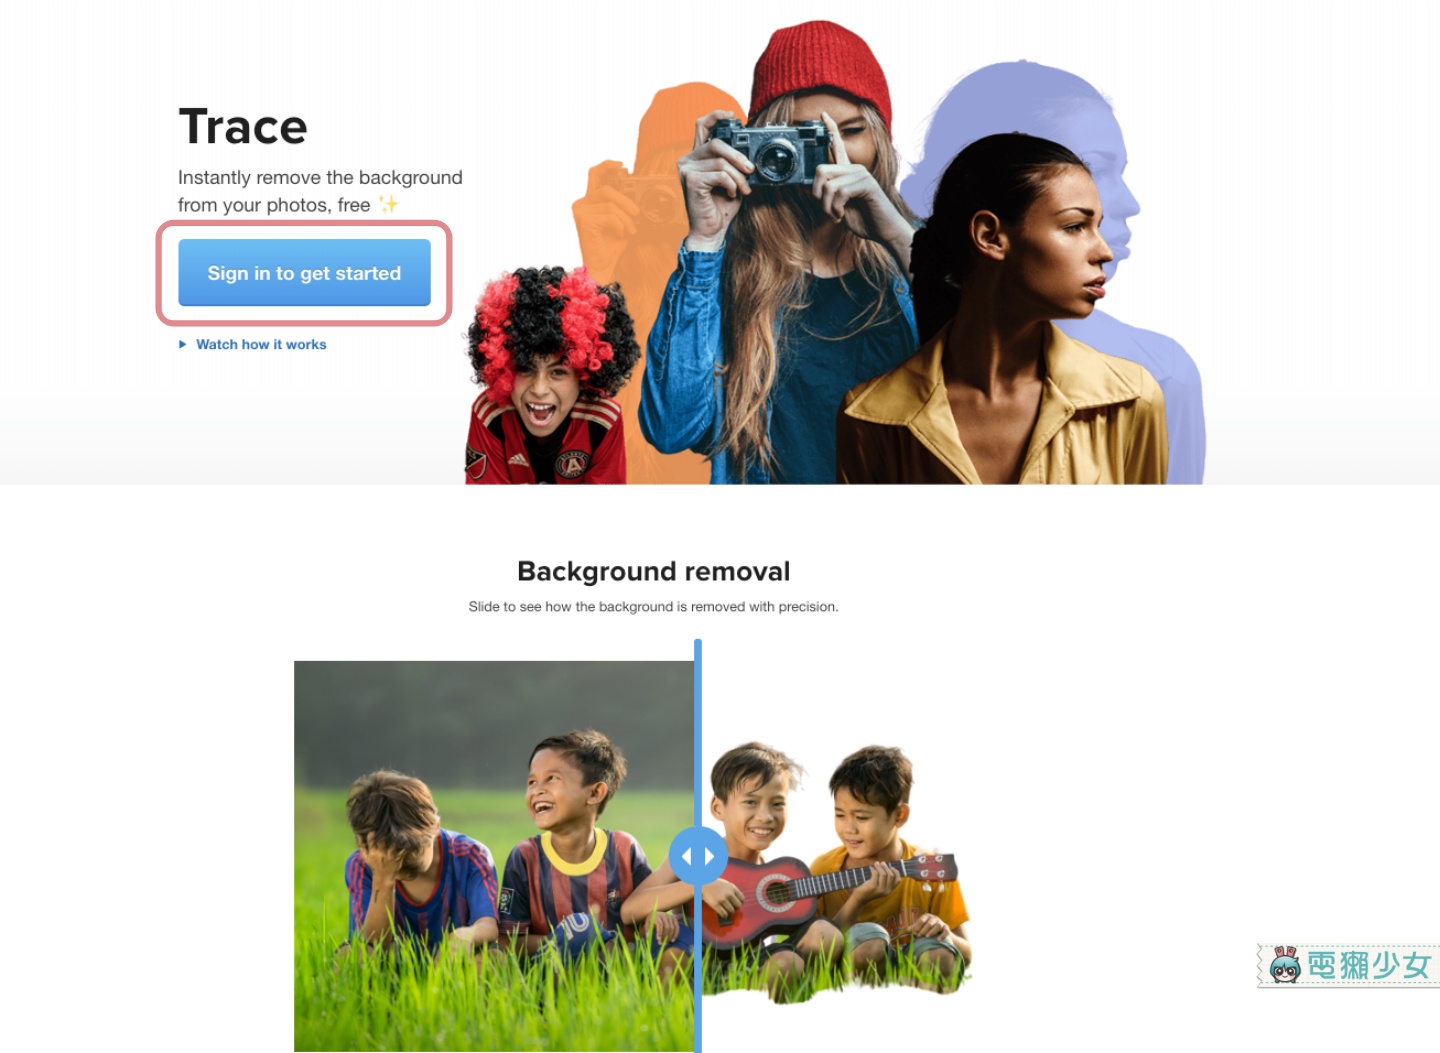 免費照片去背工具又來啦！『 Trace 』網站一鍵去背，還內建多款單色背景和圖片讓你玩